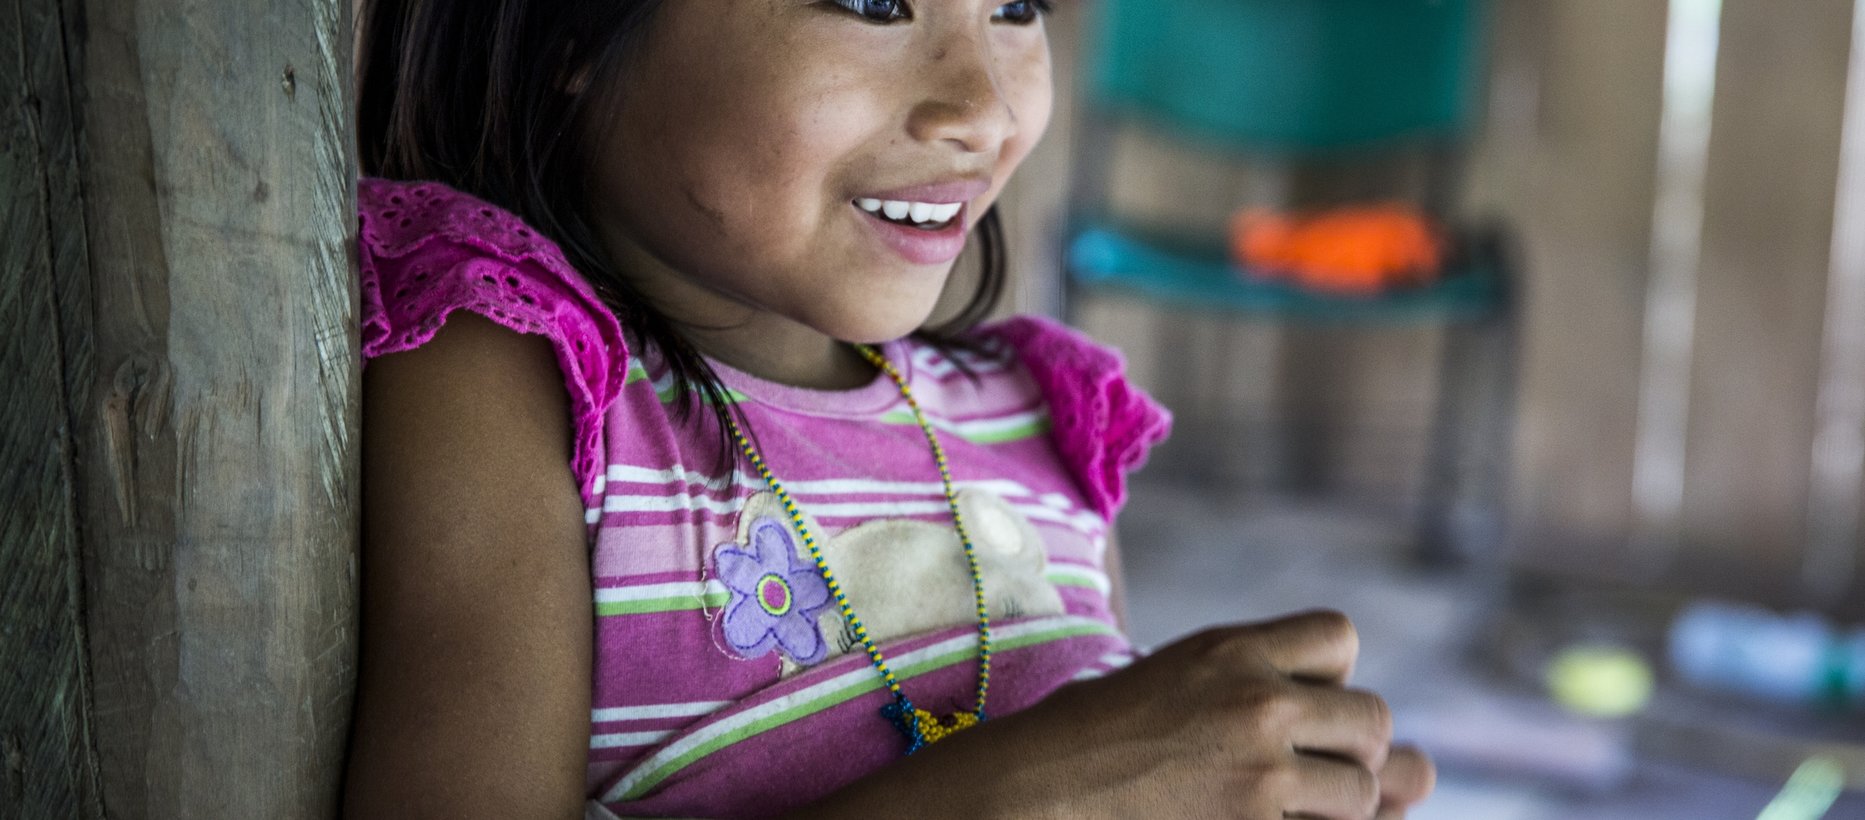 Kuvassa kolumbialainen tyttö iloisena kuvan on ottanut Meeri Koutaniemi